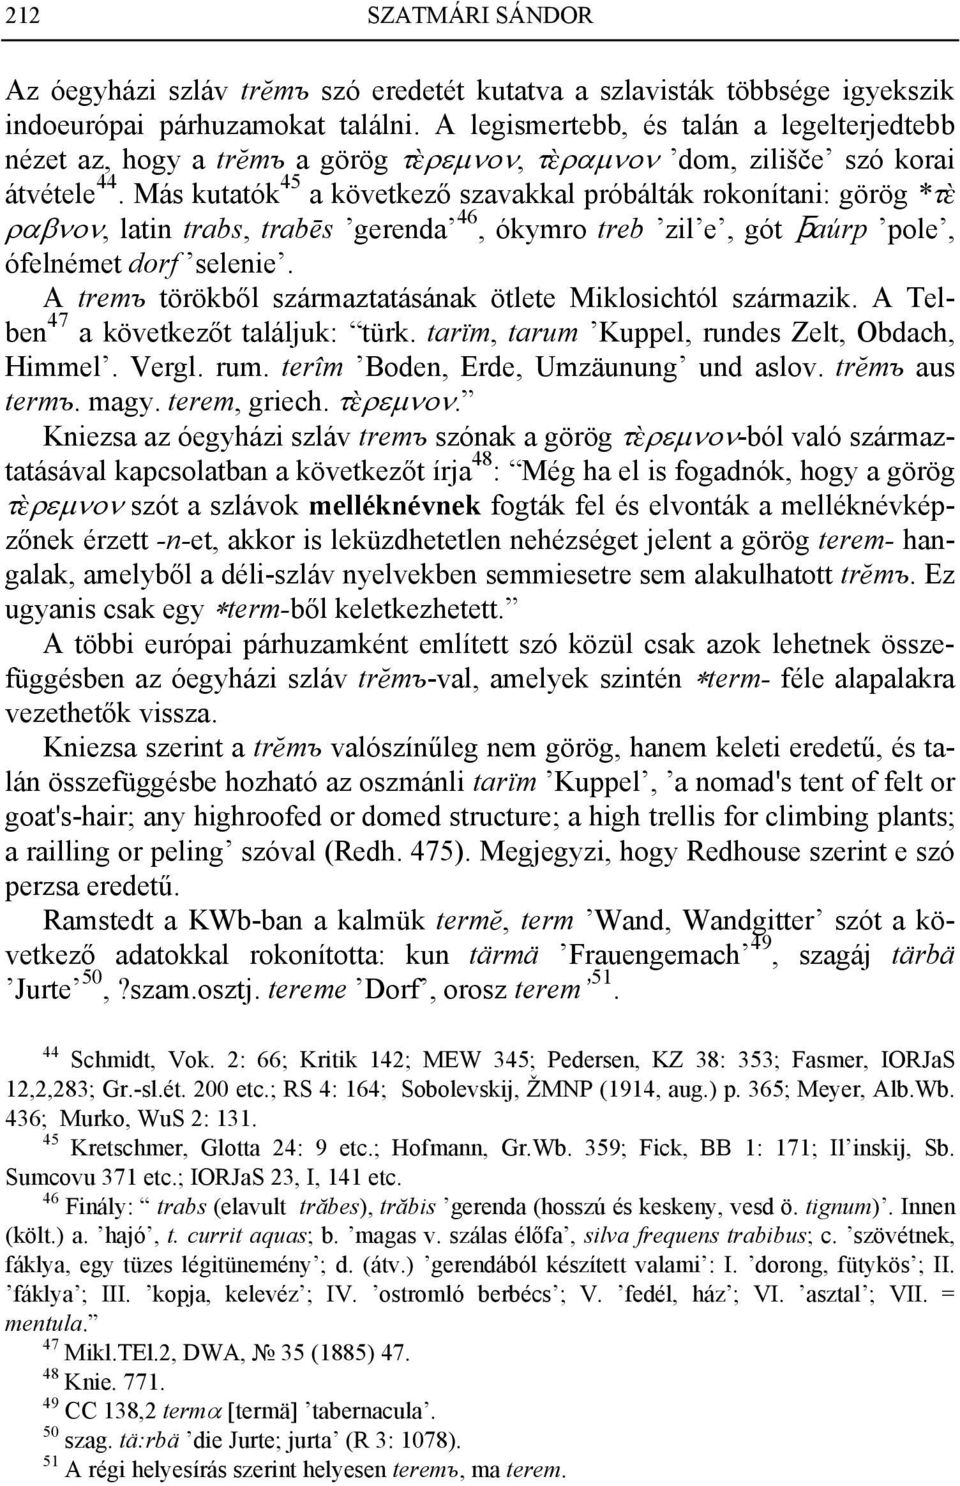 Más kutatók 45 a következő szavakkal próbálták rokonítani: görög *τ ραβνον, latin trabs, trabēs gerenda 46, ókymro treb zil e, gót (aúrp pole, ófelnémet dorf selenie.